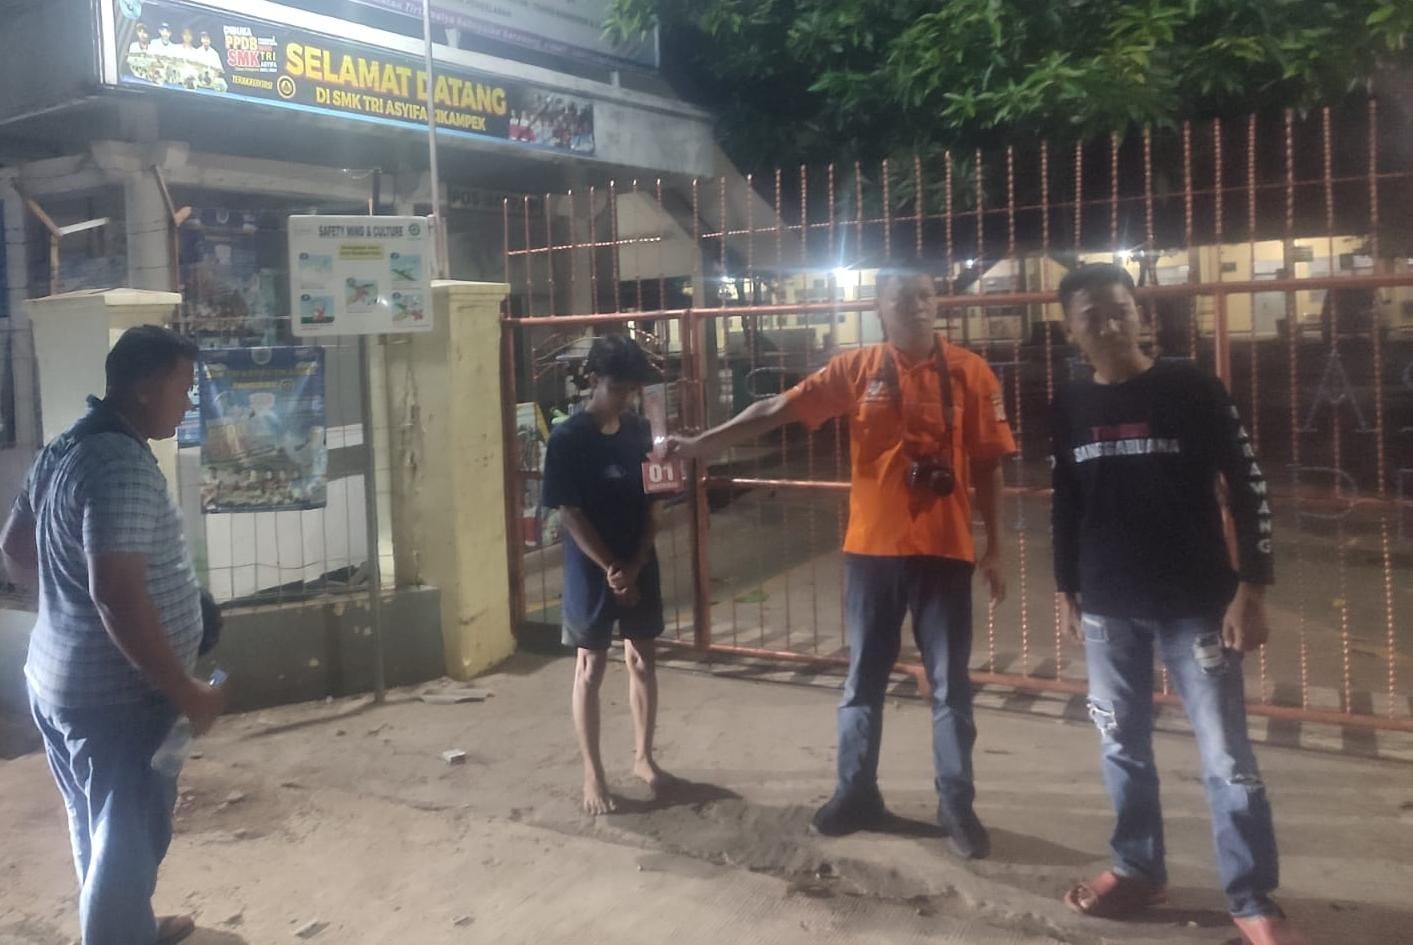 2 Kelompok Remaja Tawuran Didepan Gerbang Sekolah SMK Tri Asyifa Cikampek, 1 Tewas Terkena Bacokan Ditubuhnya